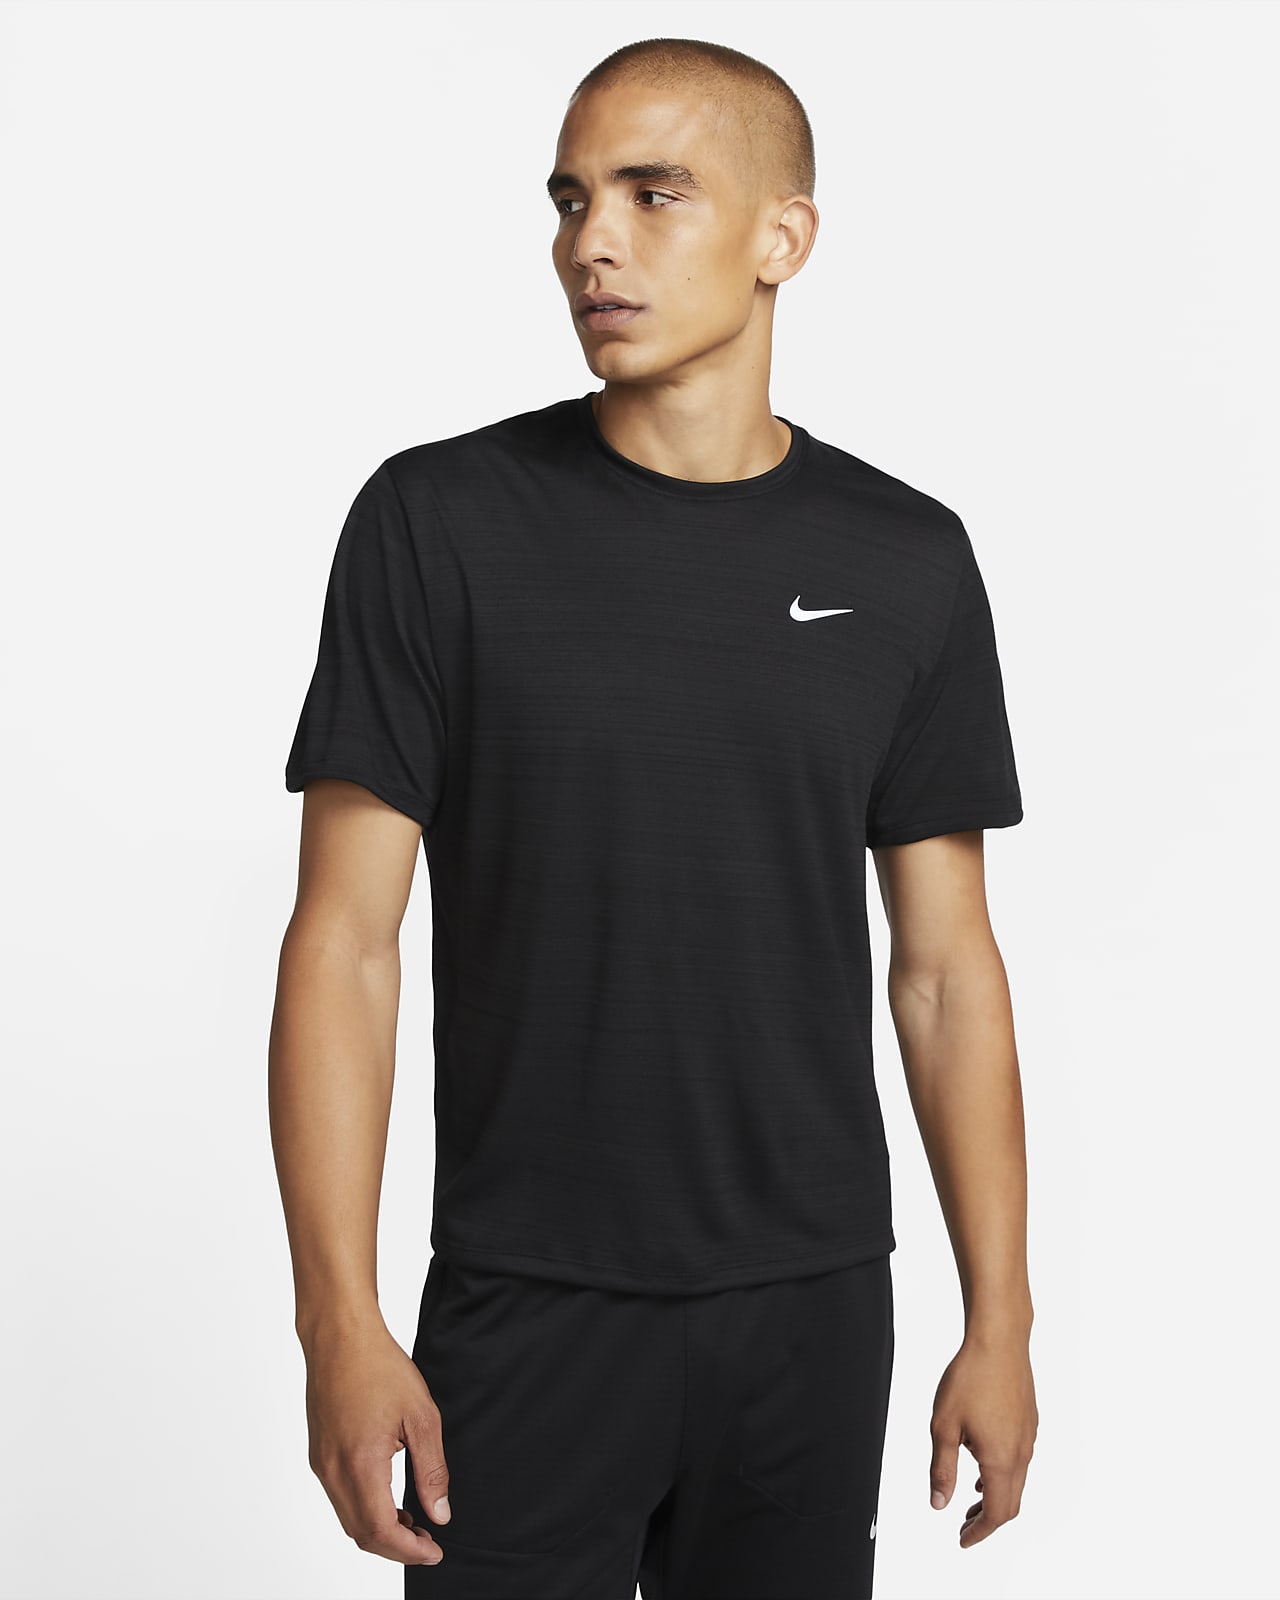 Nike Dri-FIT Men's Running Top. UK